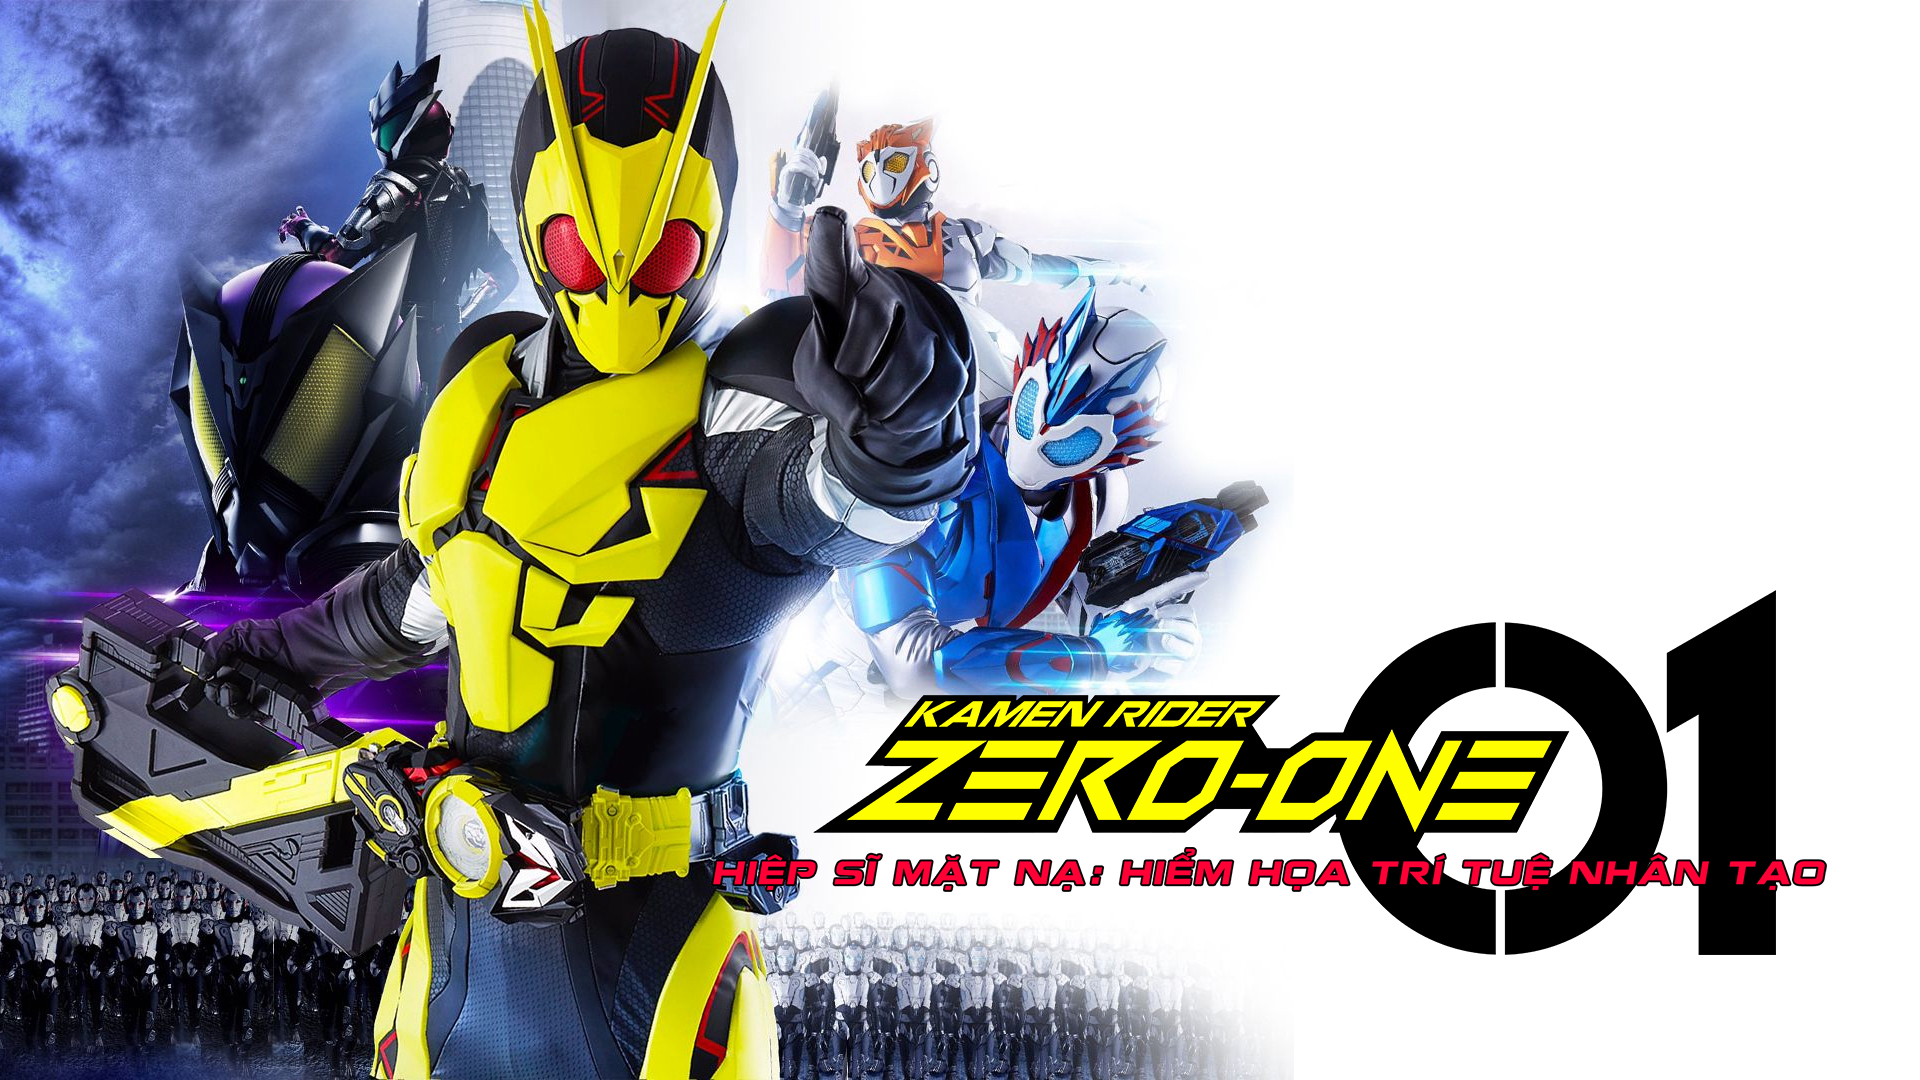 Hiệp Sỹ Mặt Nạ: Hiểm Họa Trí Tuệ Nhân Tạo Kamen Rider Zero One